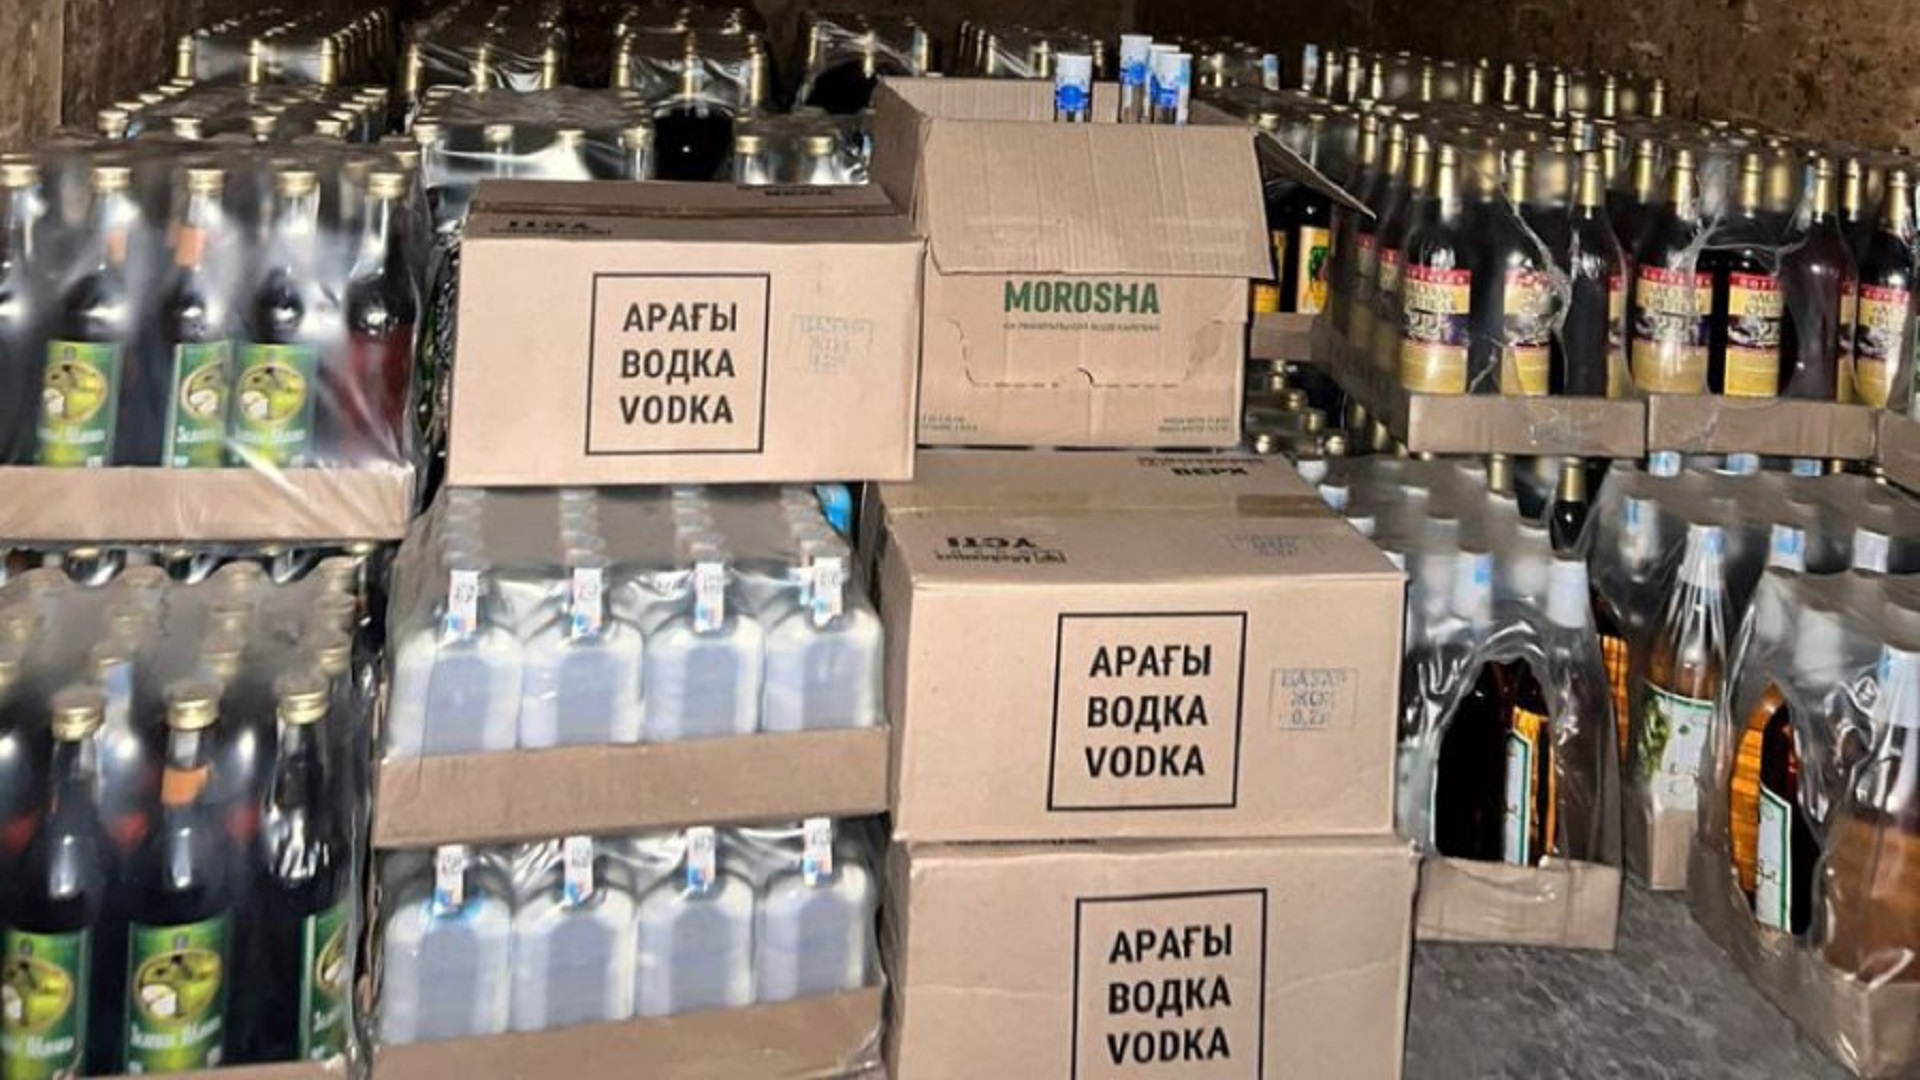 В Караганде изъяли более тысячи бутылок подозрительного алкоголя - Bizmedia.kz